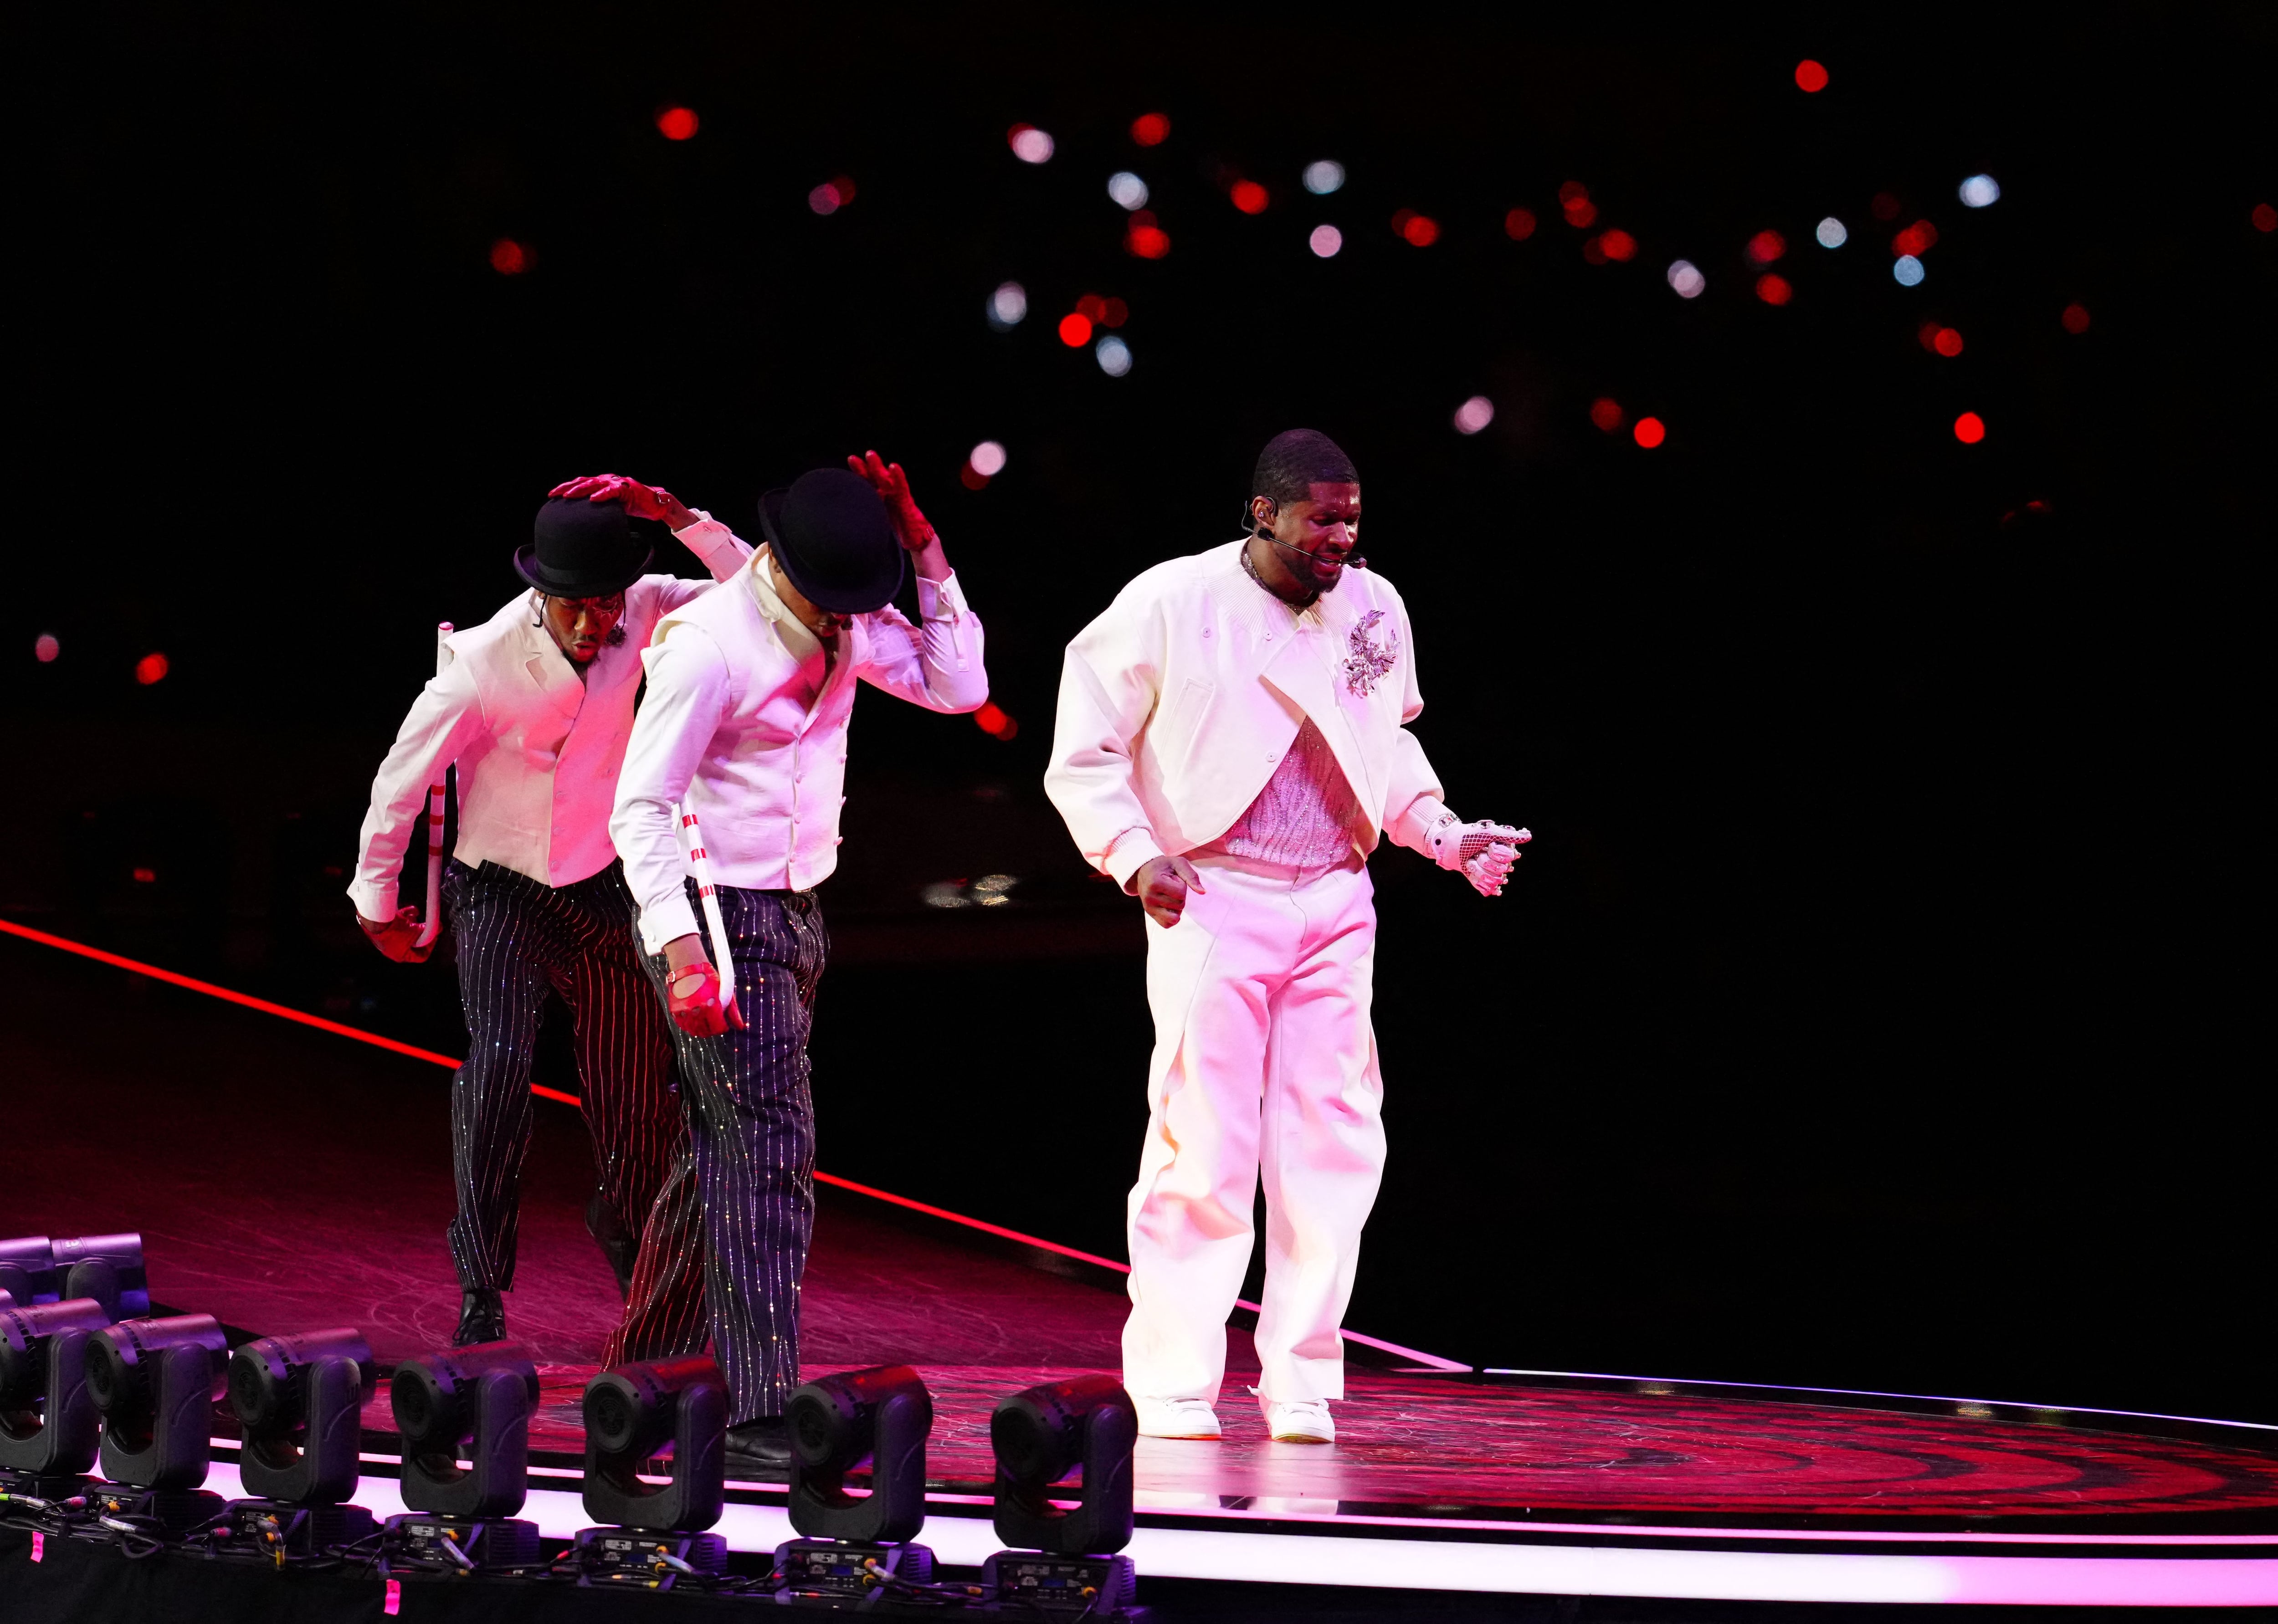 El texano apostó a una temática de Michael Jackson para algunos pasajes del espectáculo (Foto: USA Today)